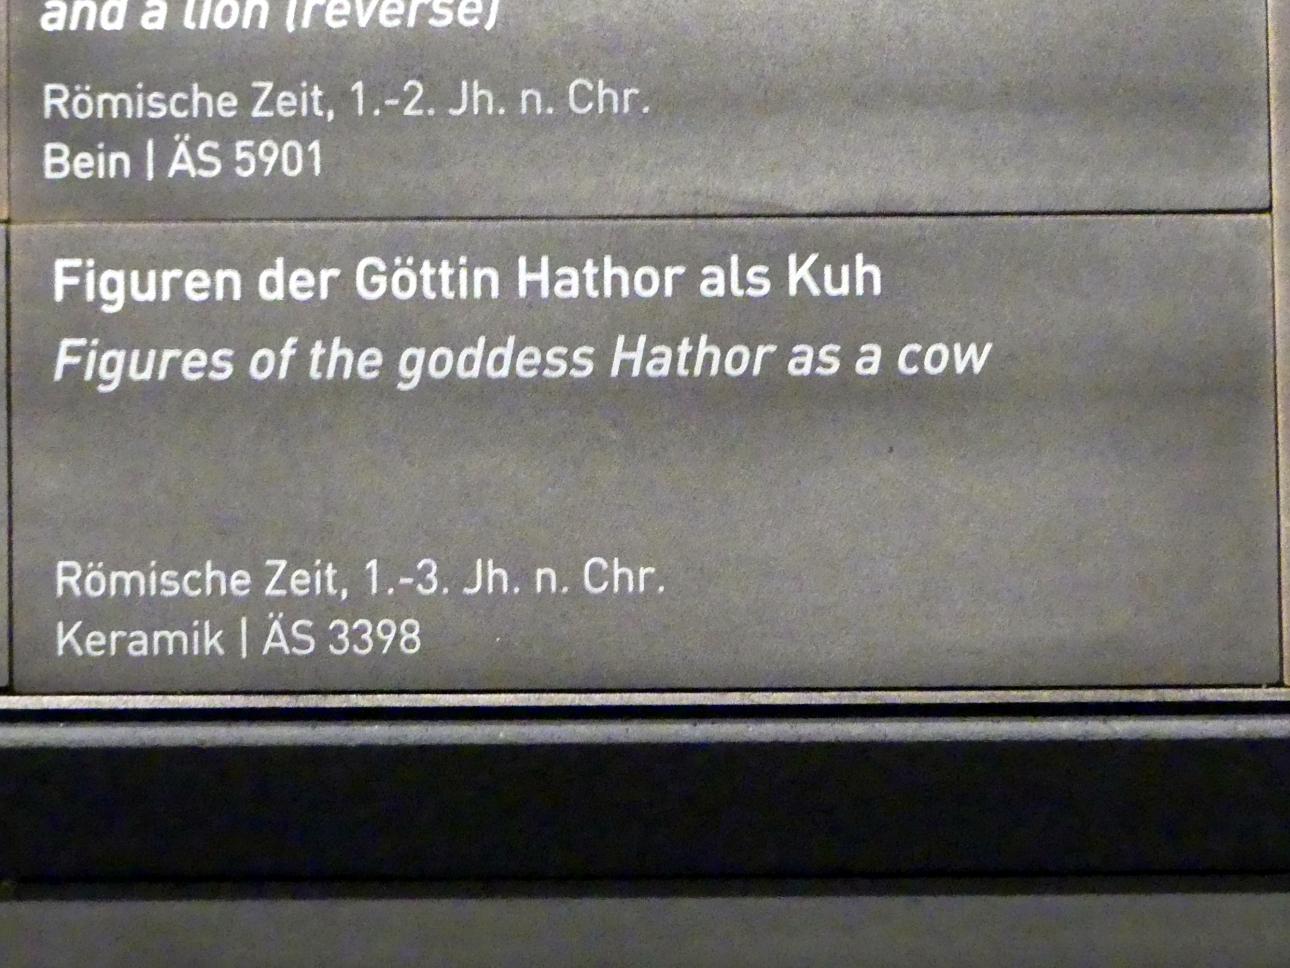 Figuren der Göttin Hathor als Kuh, 1 - 300, Bild 2/2